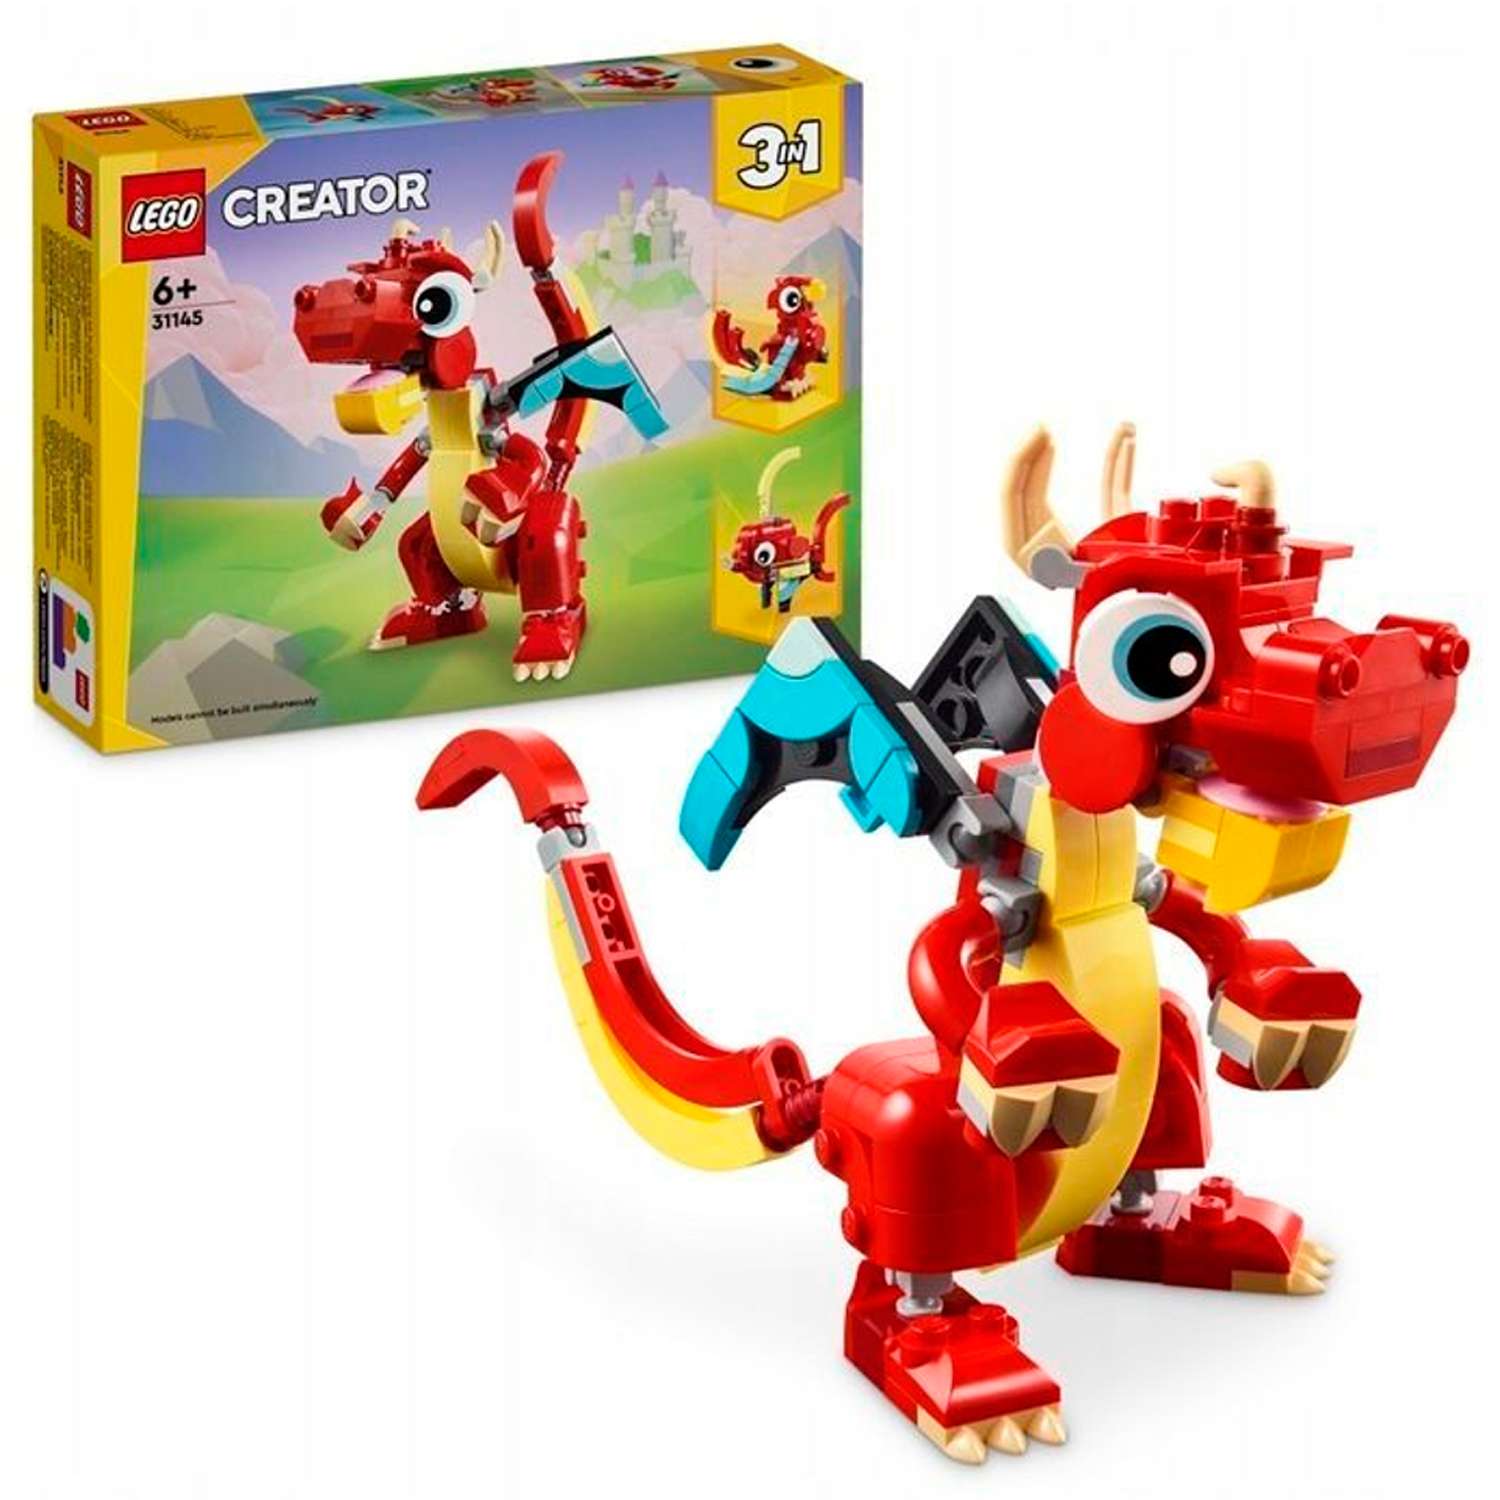 Конструктор детский LEGO Creator 3-in-1 Красный дракон 31145 - фото 1